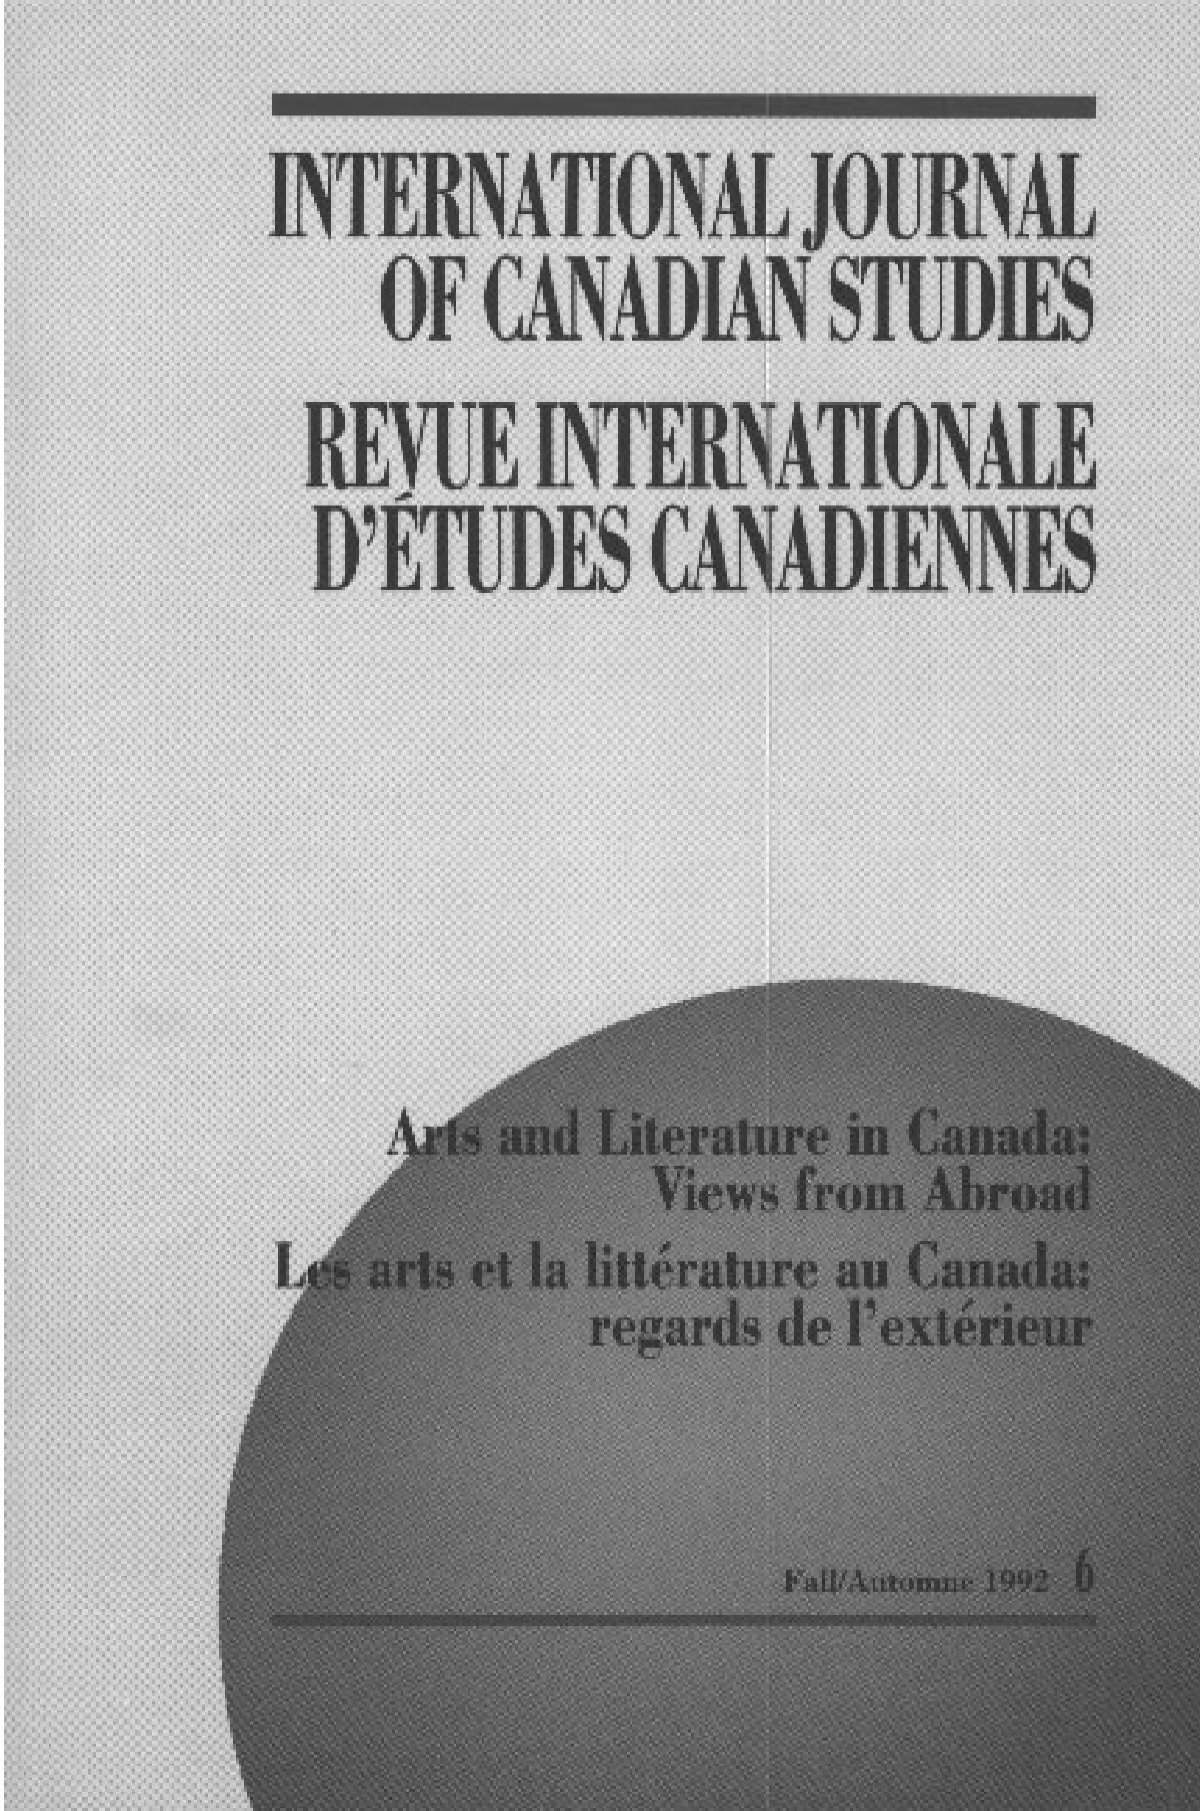 numa c ro 6 automne 1992 conseil international d a c tudes canadiennes